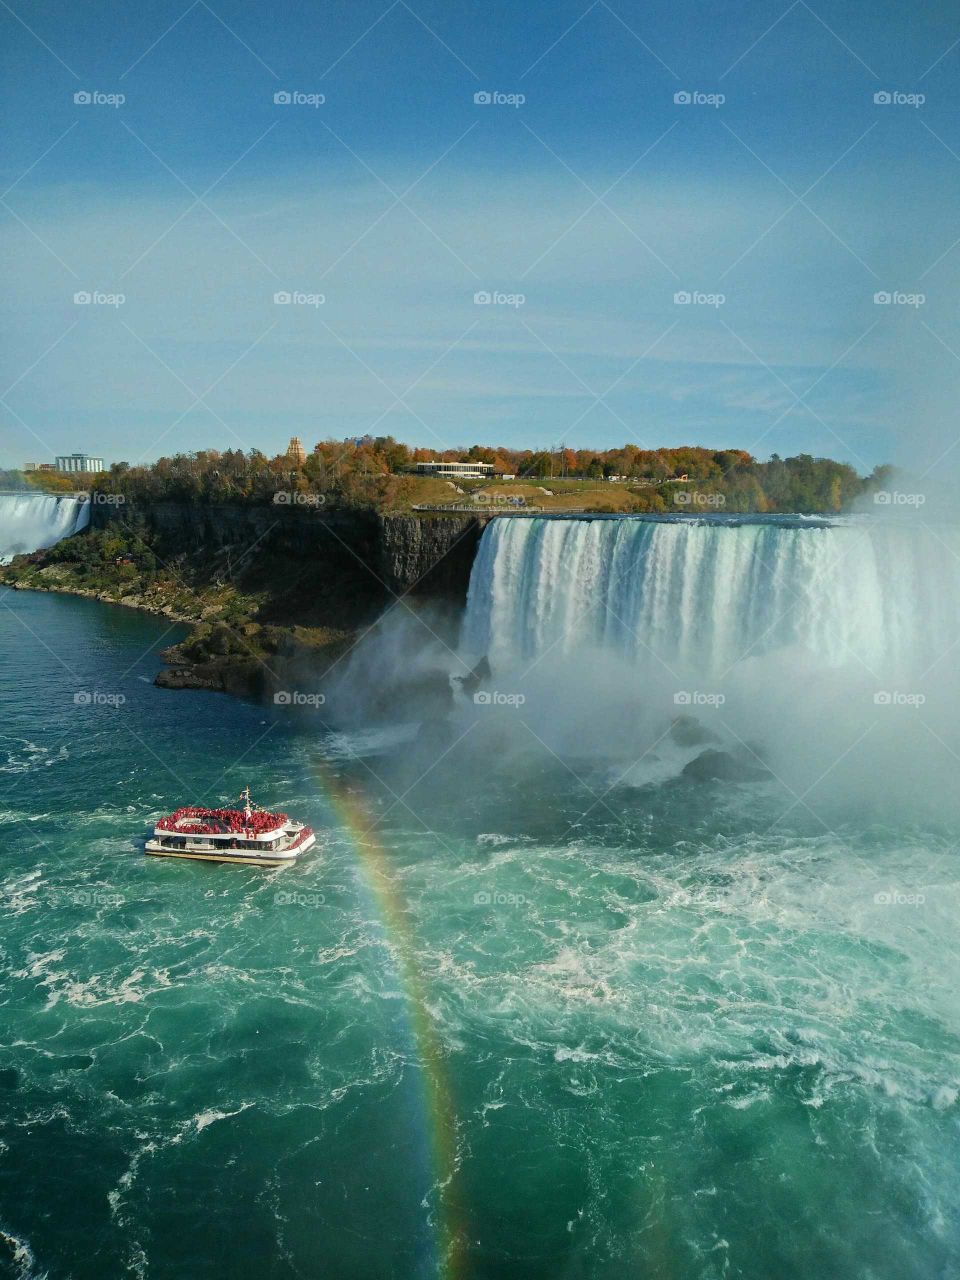 Rainbow over Niagara Falls